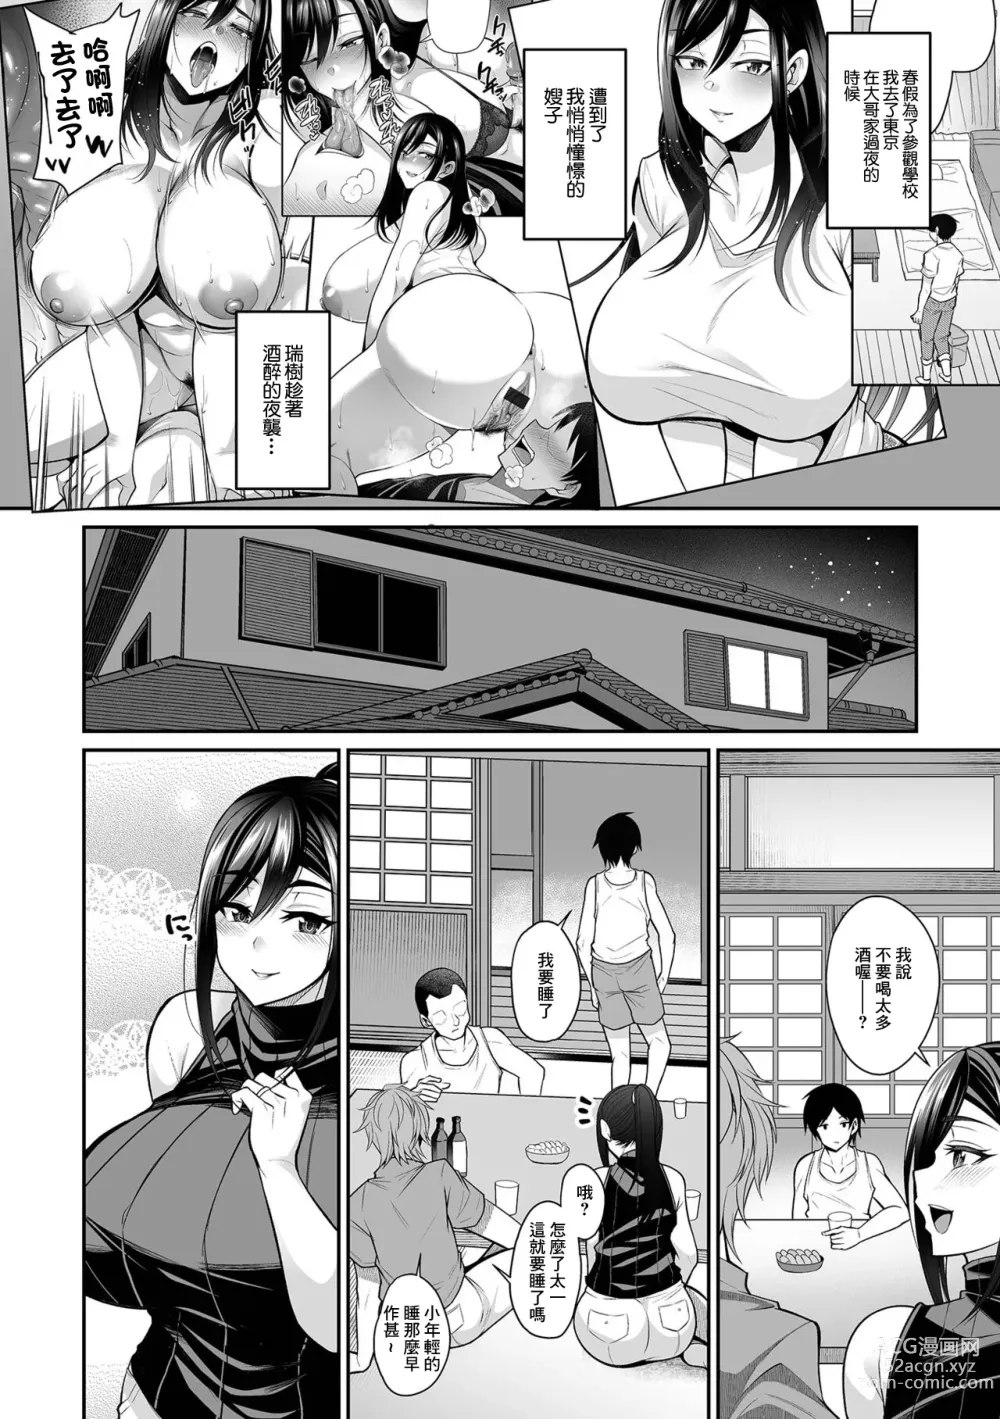 Page 22 of manga NikYobai Aniyome